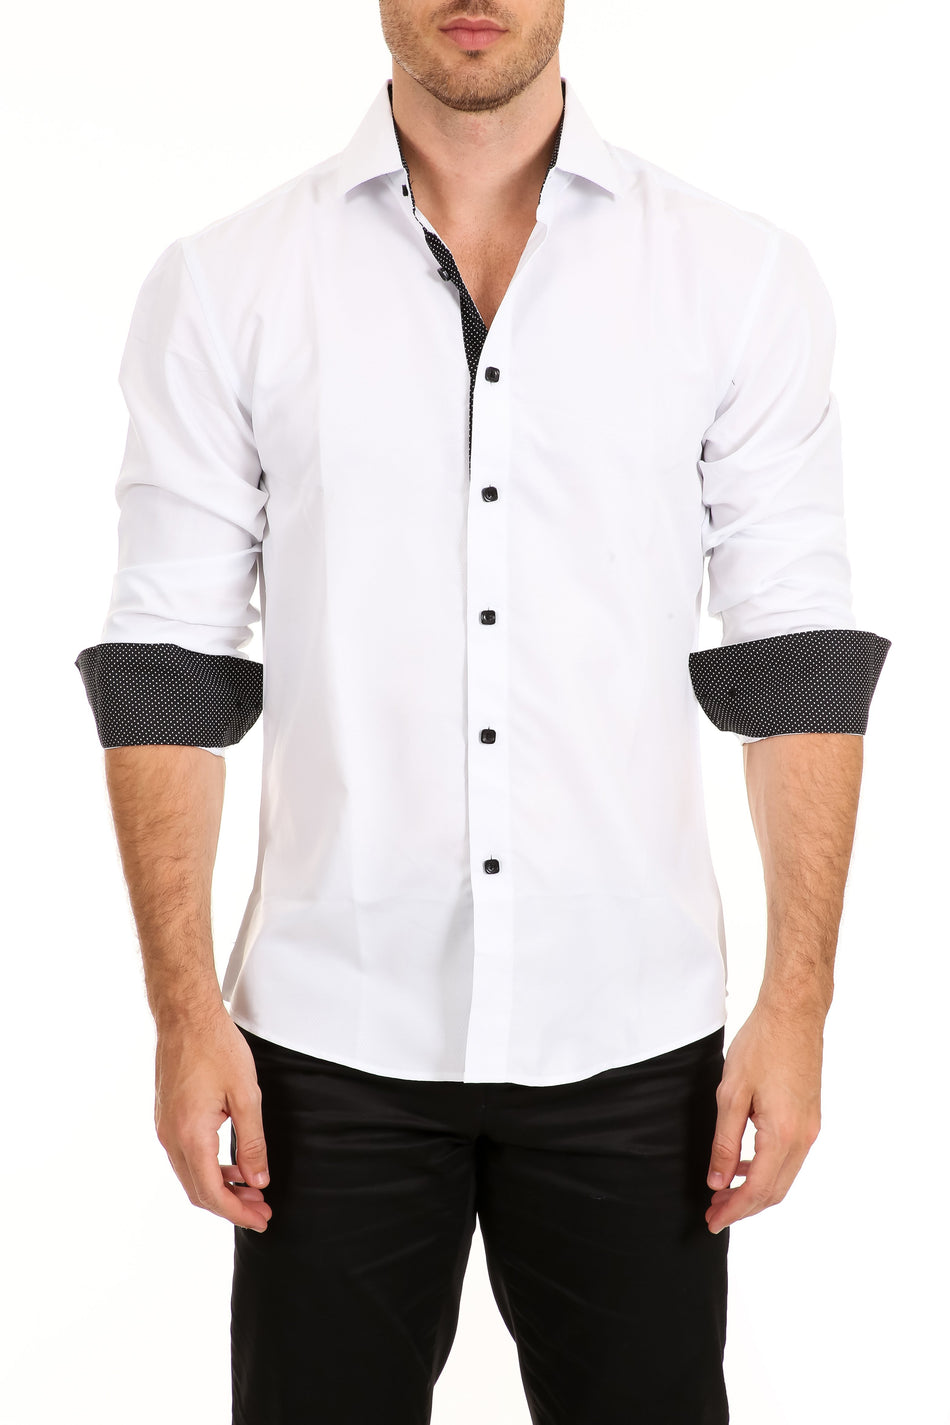 192325 - White Button Up Long Sleeve Dress Shirt